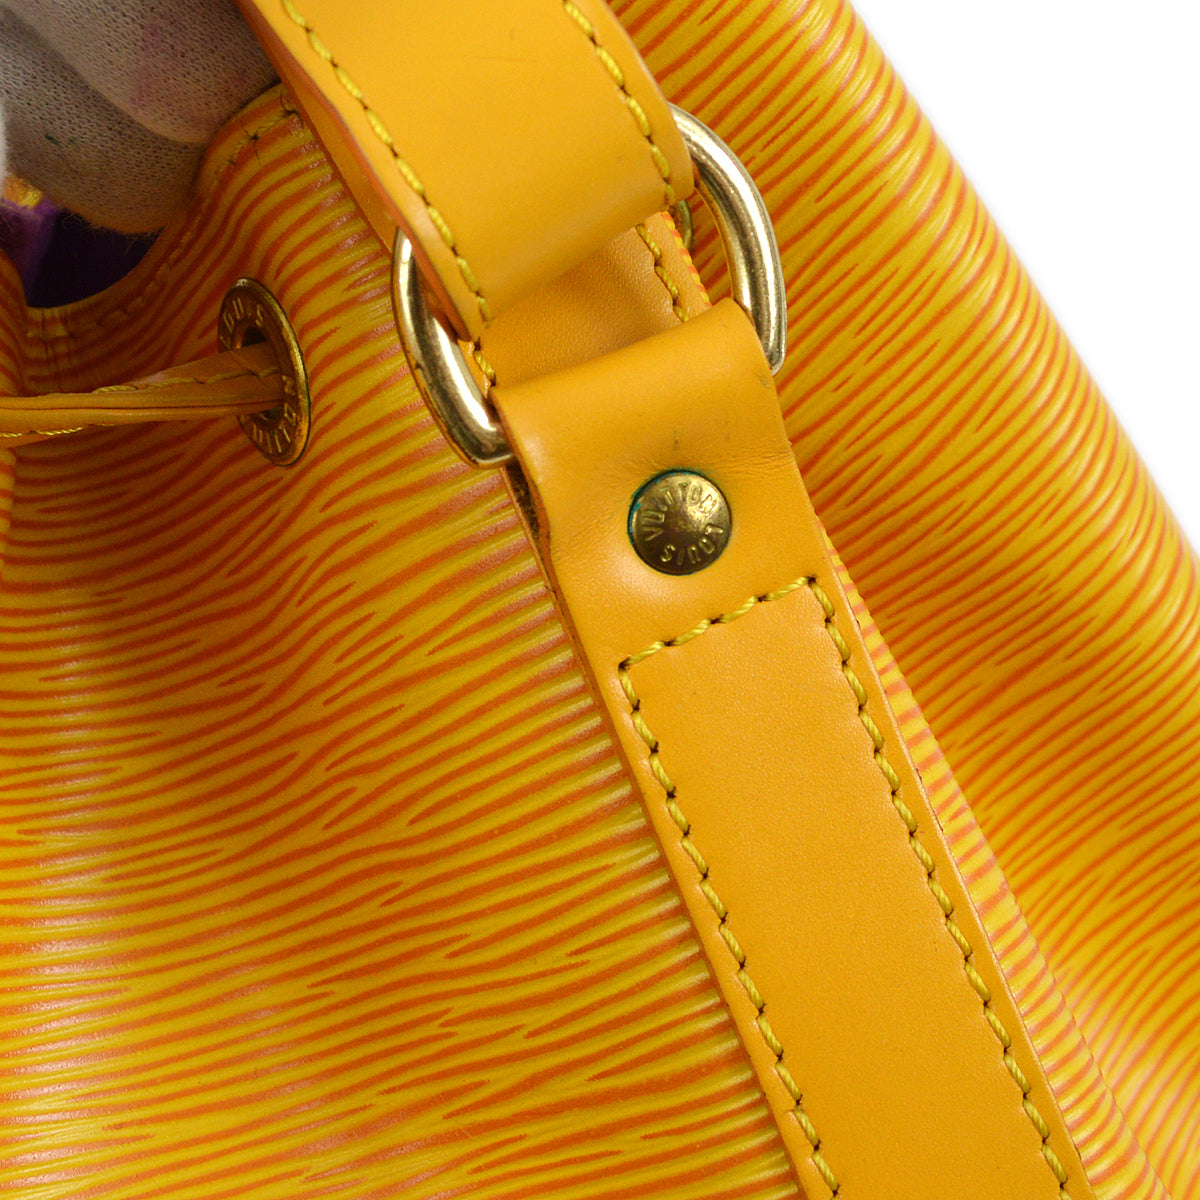 Louis Vuitton 1995 Yellow Epi Noe Bucket Drawstring Bag M44009